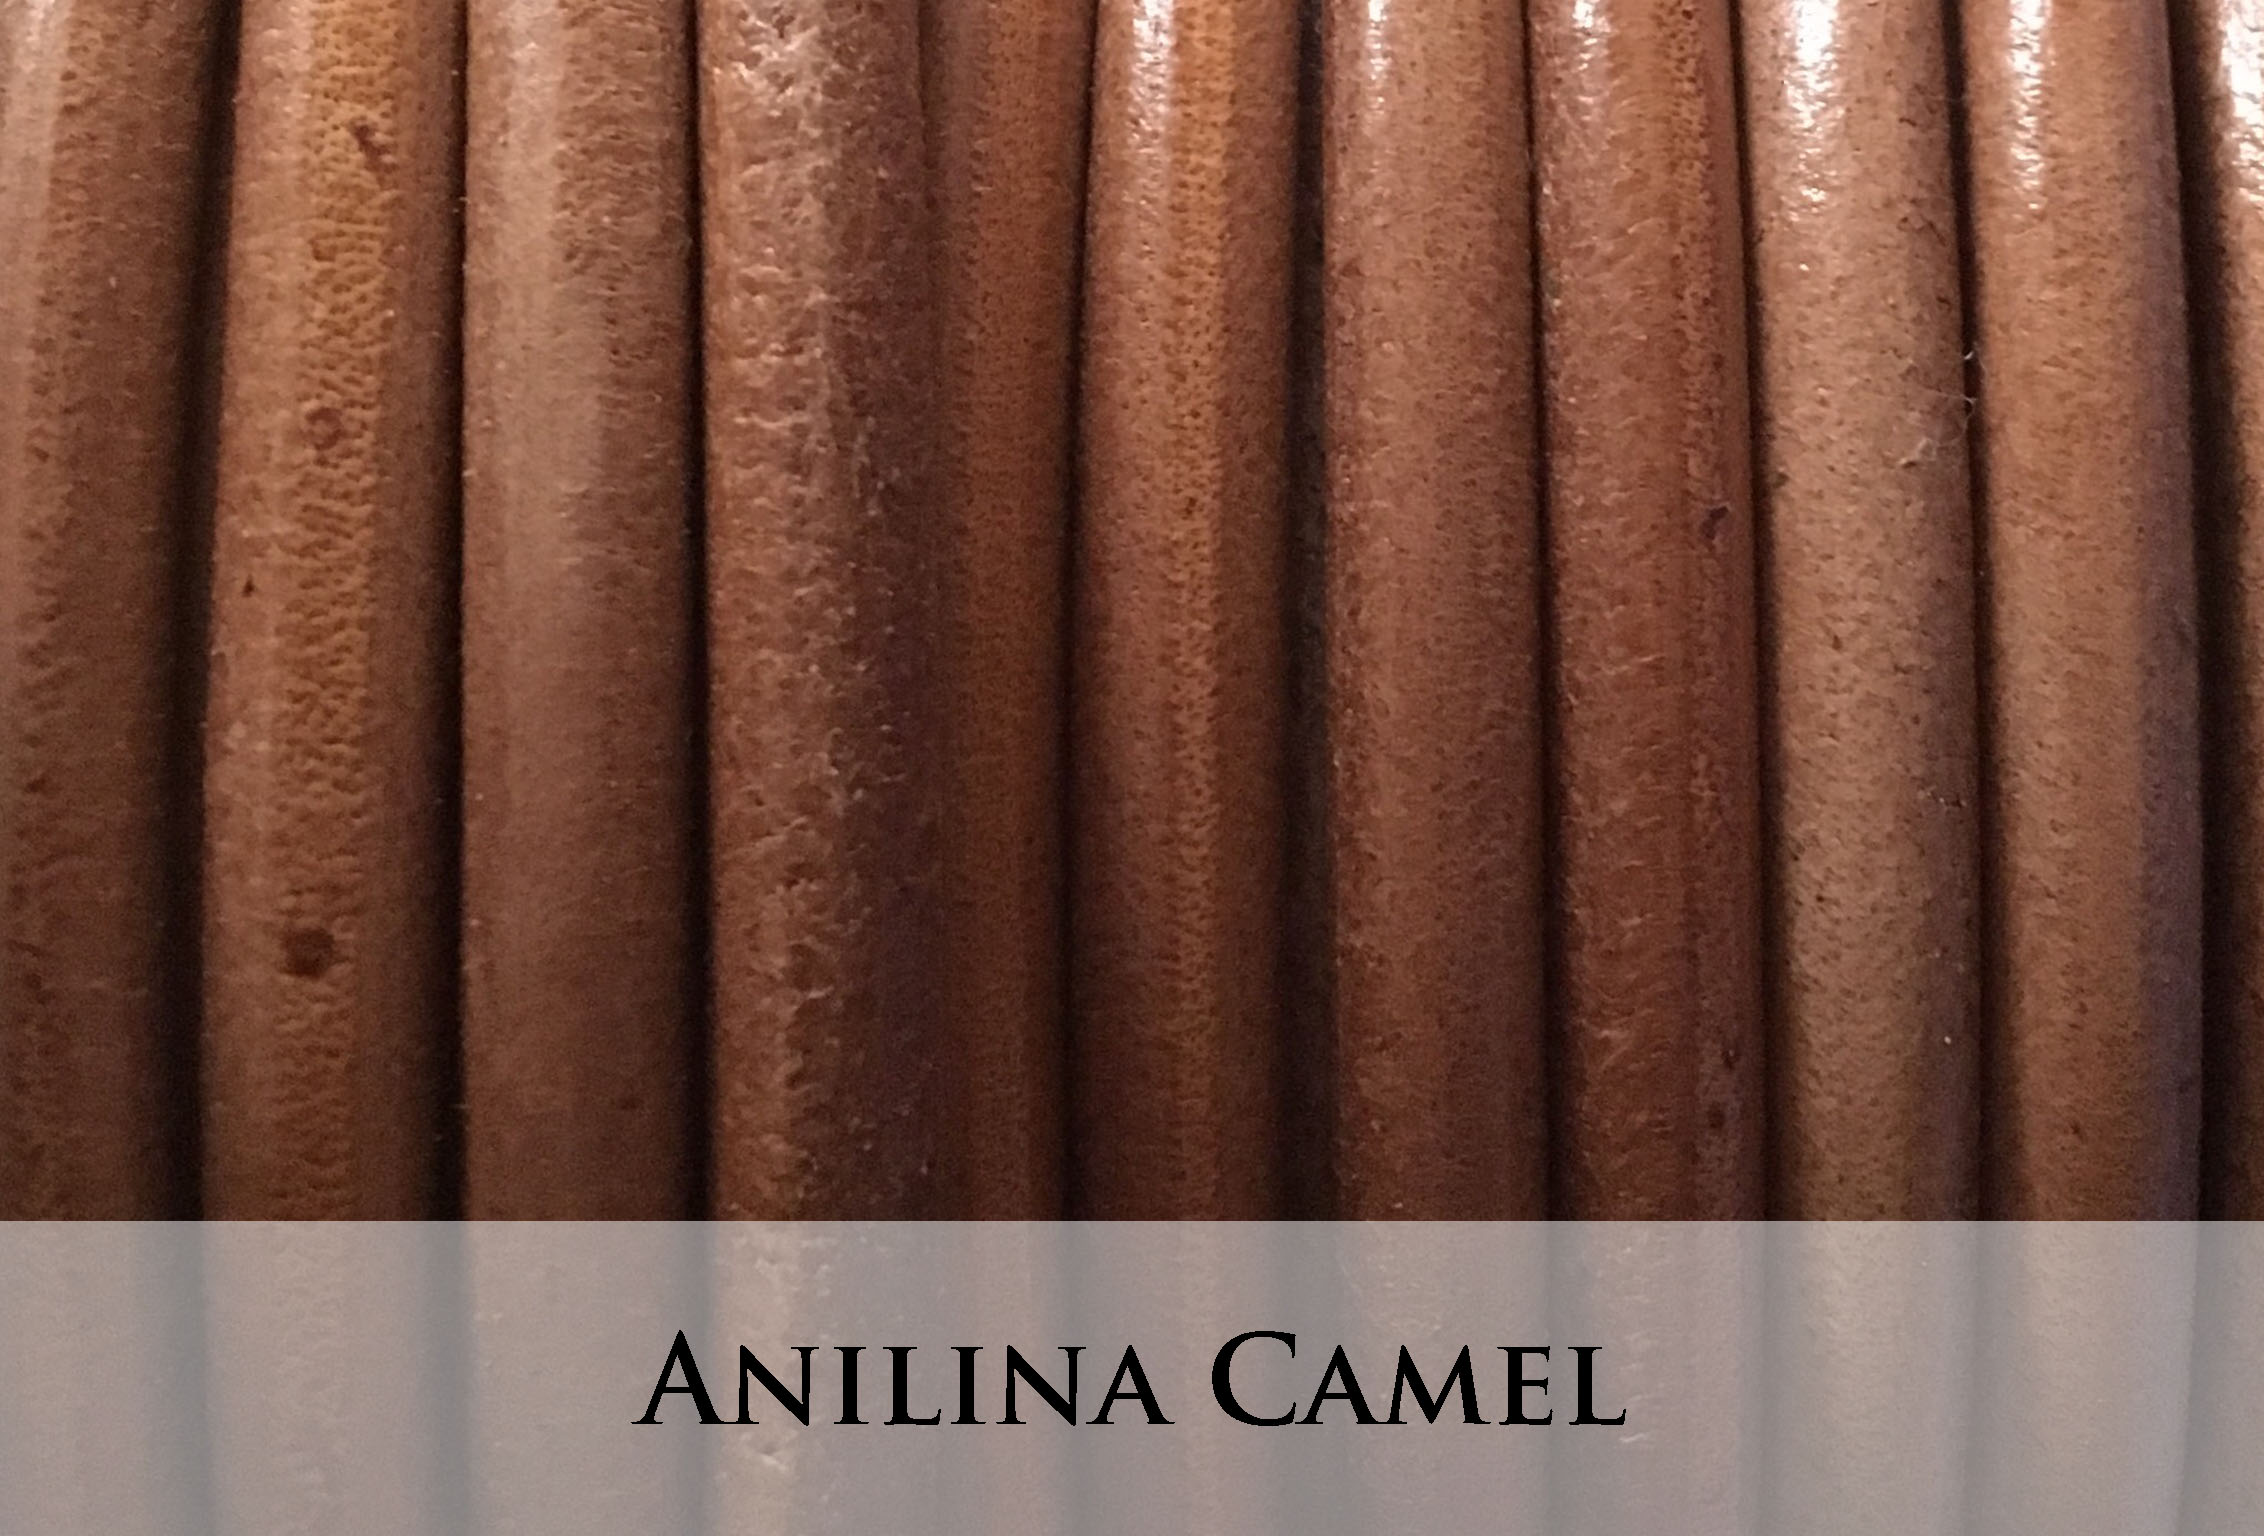 Anilina Camel